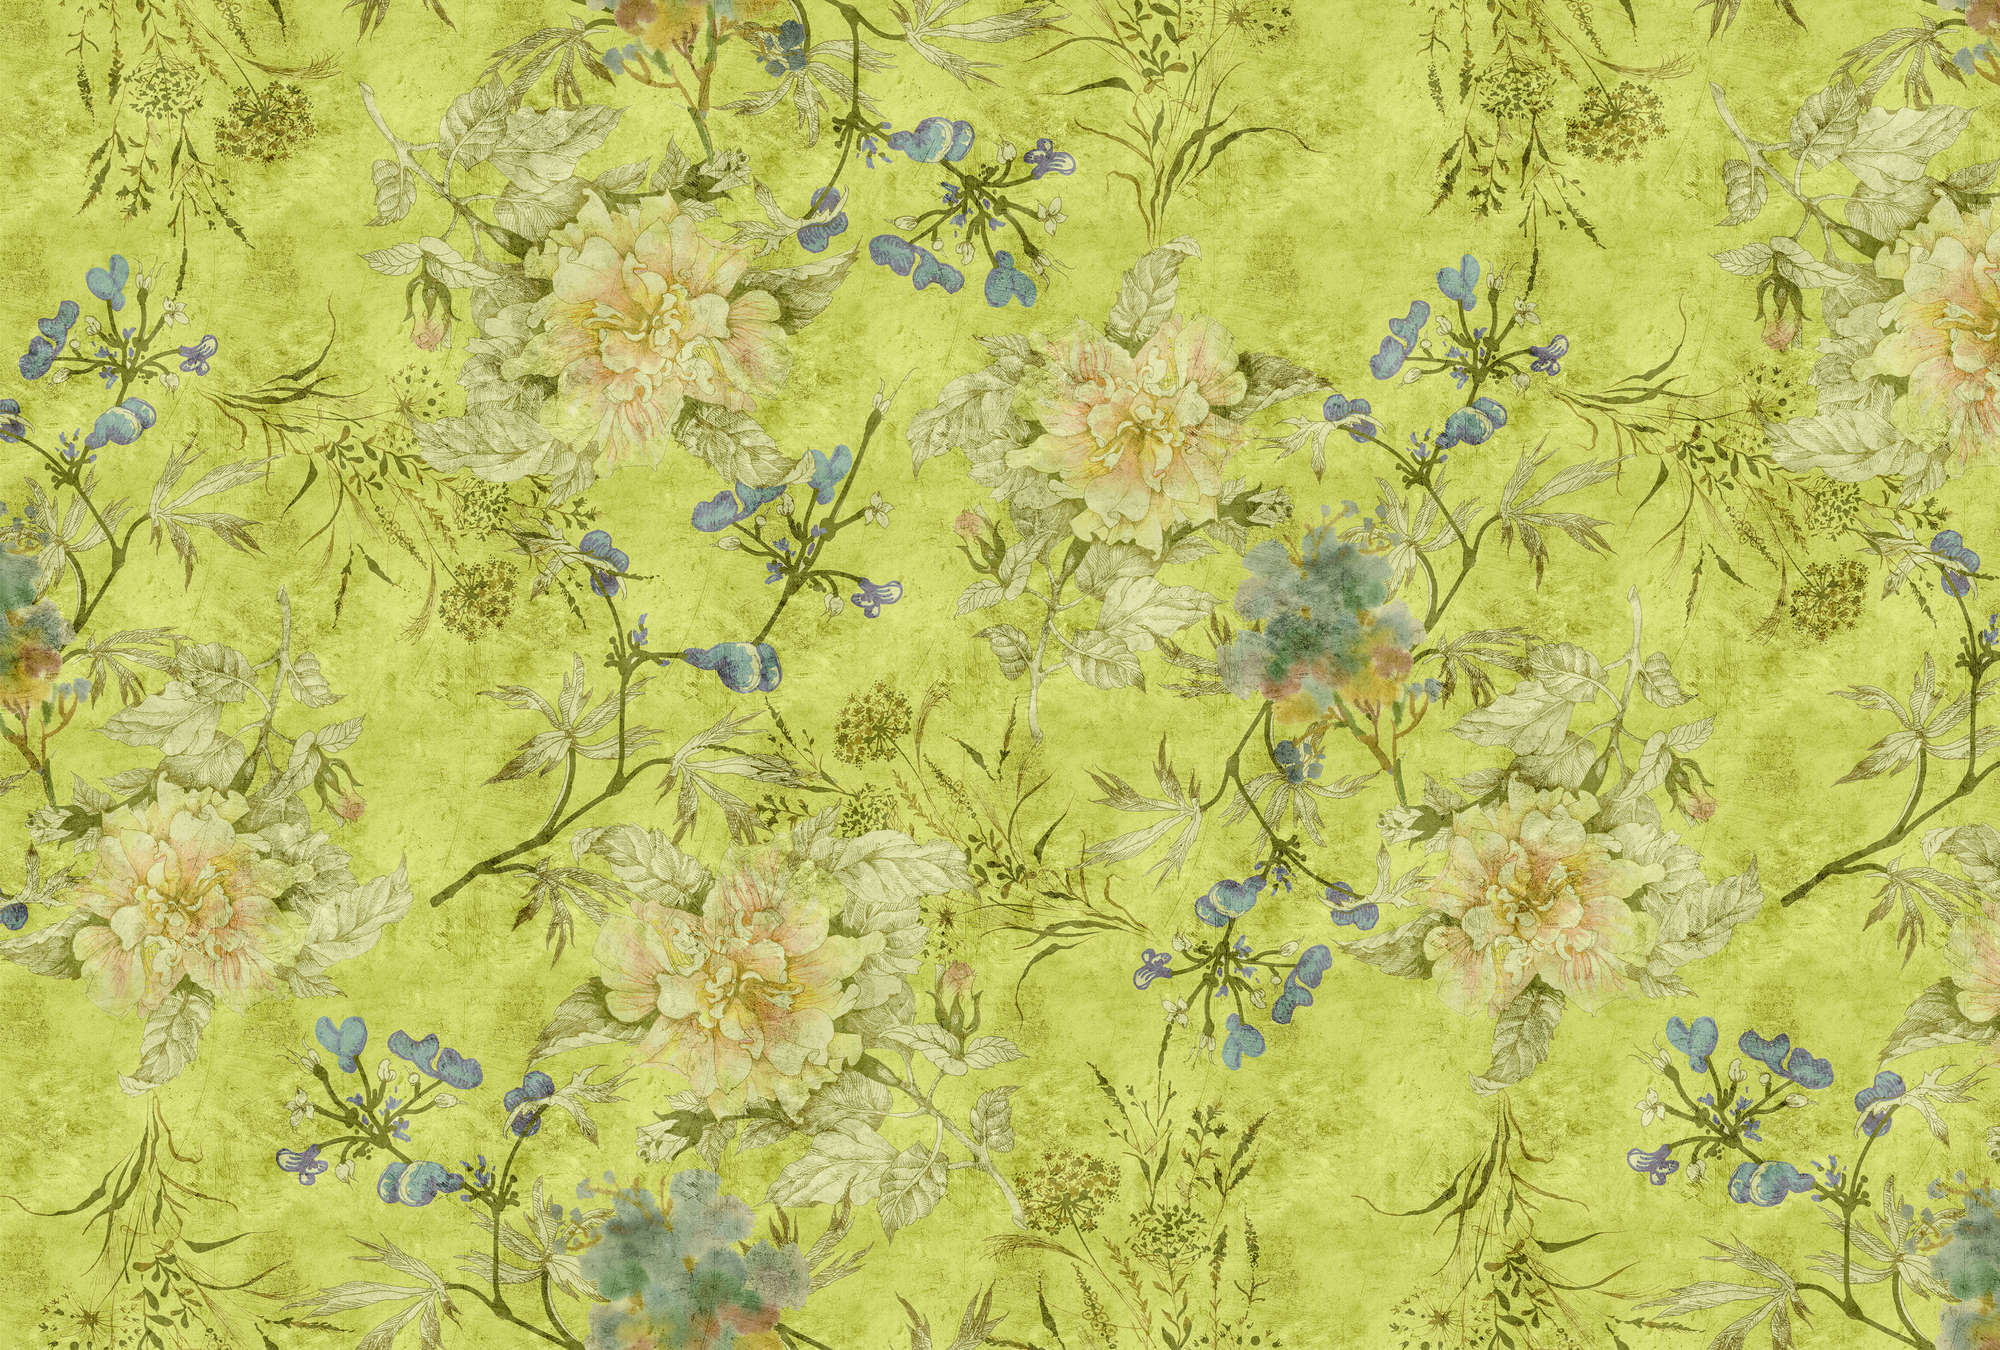             Tenderblossom 1 - Fotobehang met moderne bloemranken in een krasstructuur - Groen | Mat glad vlies
        